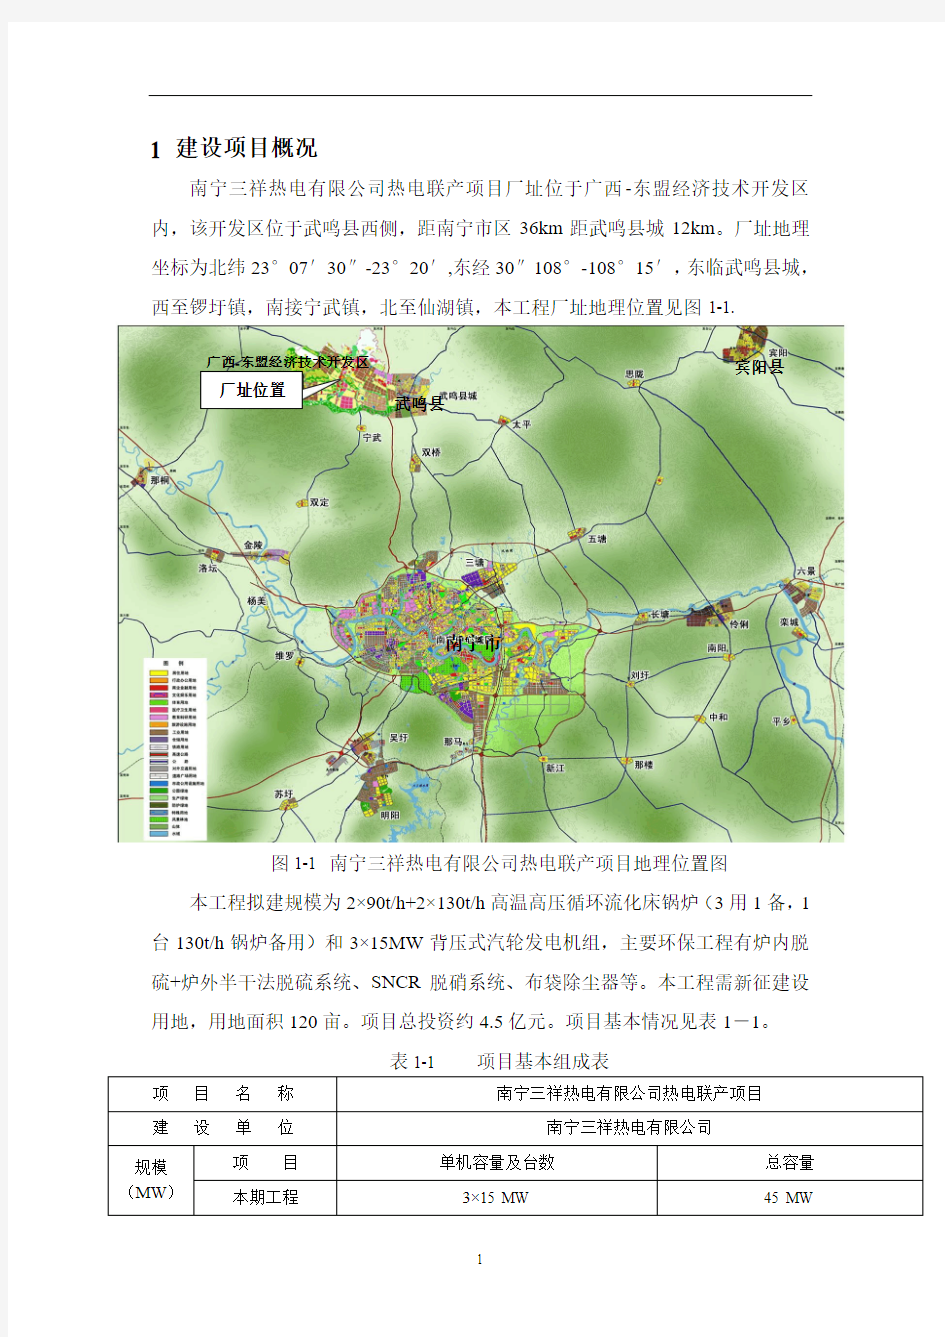 南宁三祥热电有限公司热电联产项目环境影响报告书